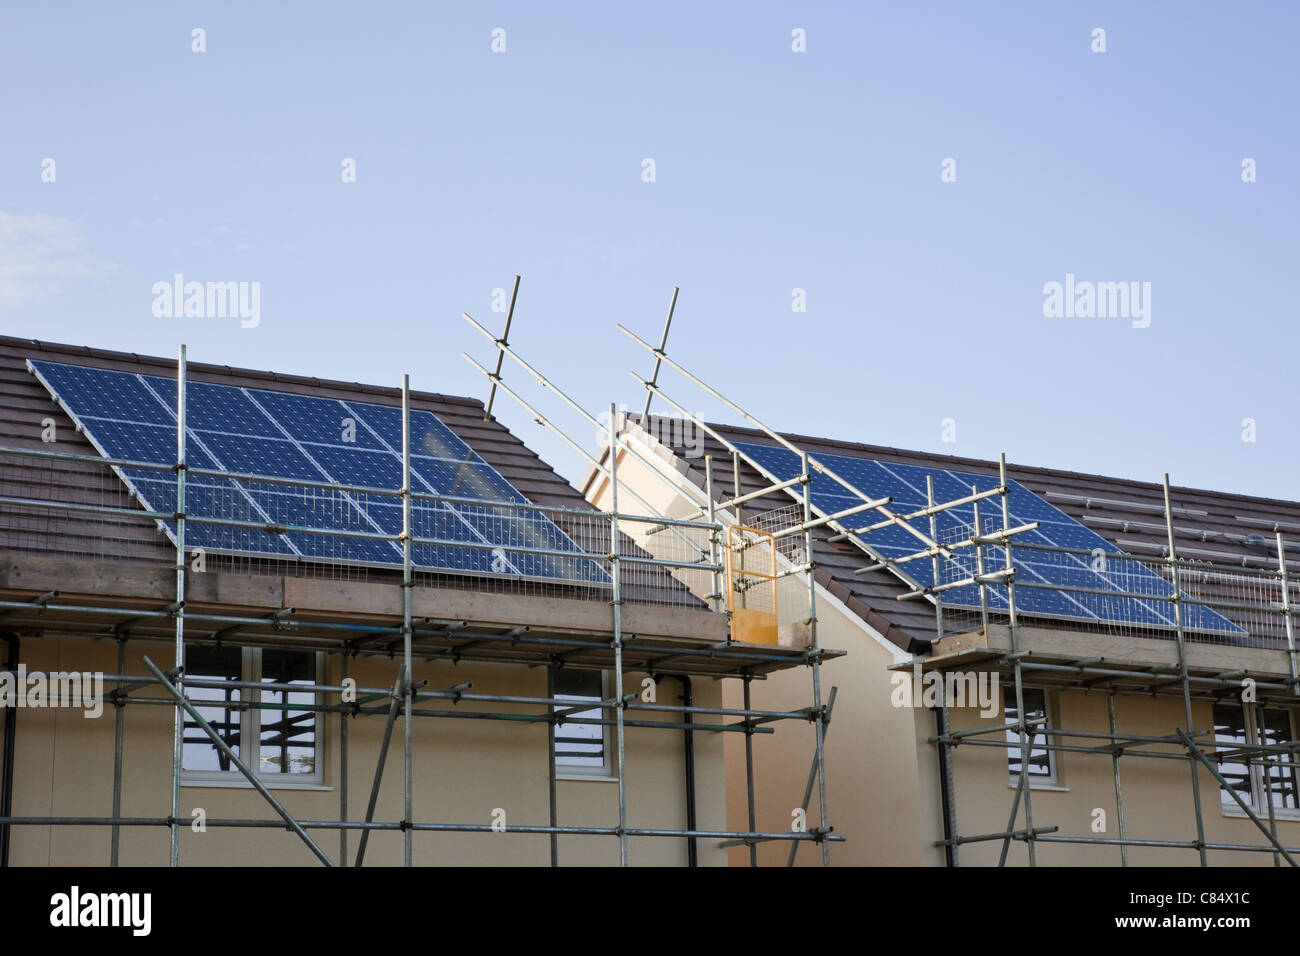 Gerüst für Sonnenkollektoren auf den Dächern der Neuen Häuser bauen installiert werden. England, Großbritannien, Großbritannien Stockfoto